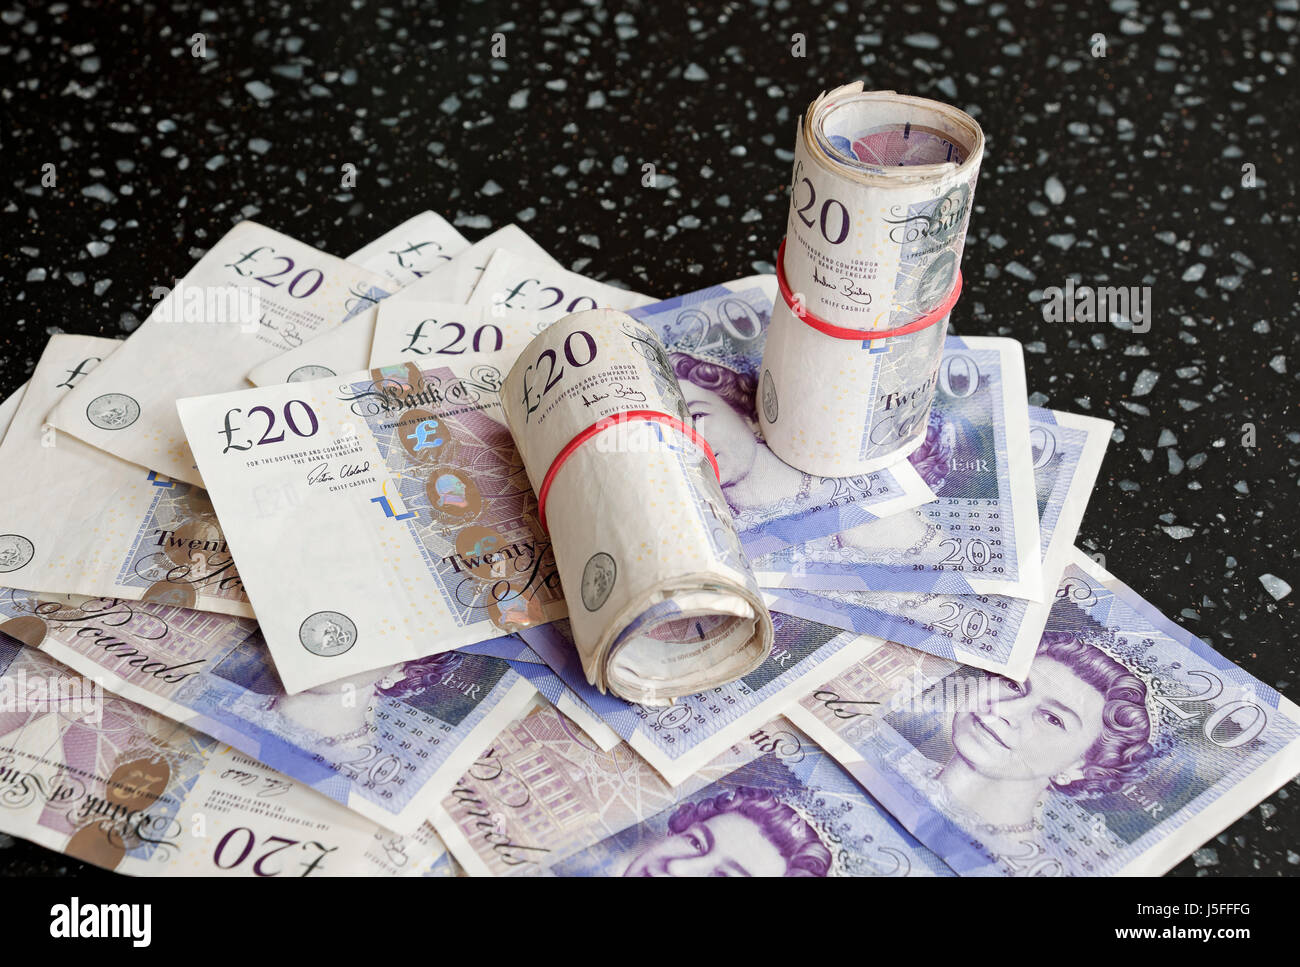 Primo piano di denaro contante inglese £20 banconote da venti sterline banconote banconote banconote banconote Inghilterra Regno Unito GB Gran Bretagna Foto Stock